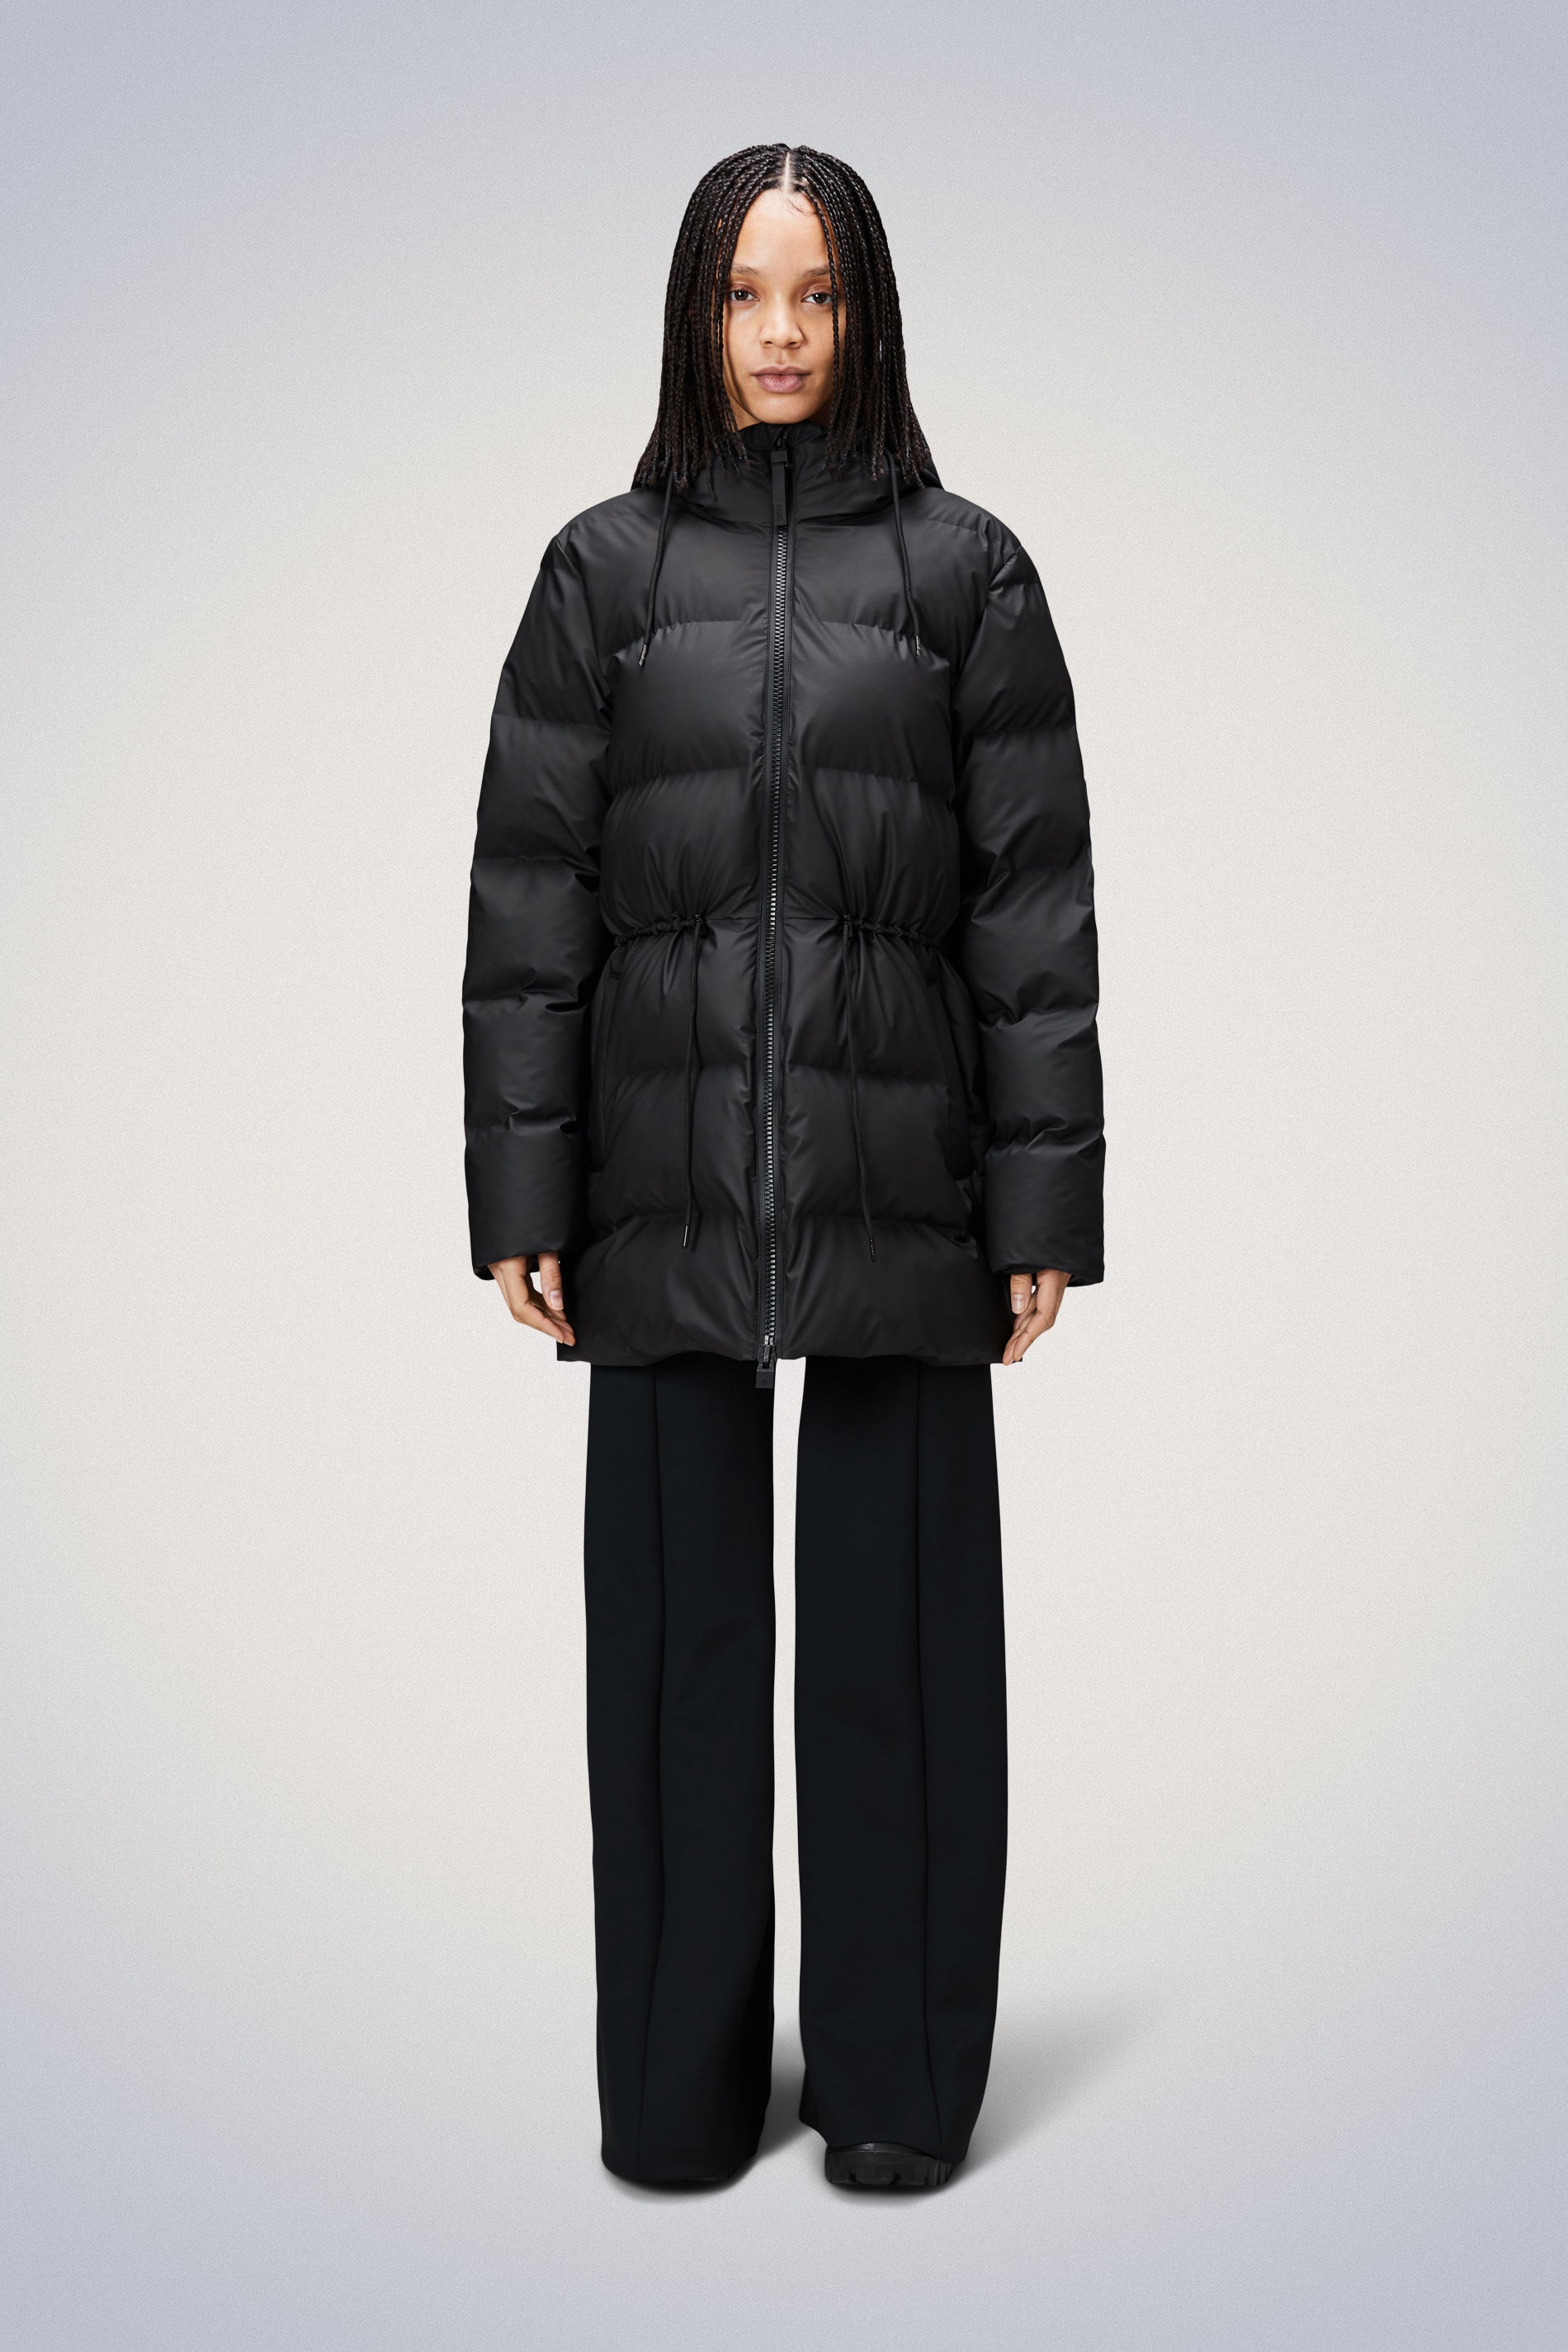 Buy Women's Coats Black Puffer Long Coatsandjackets Online